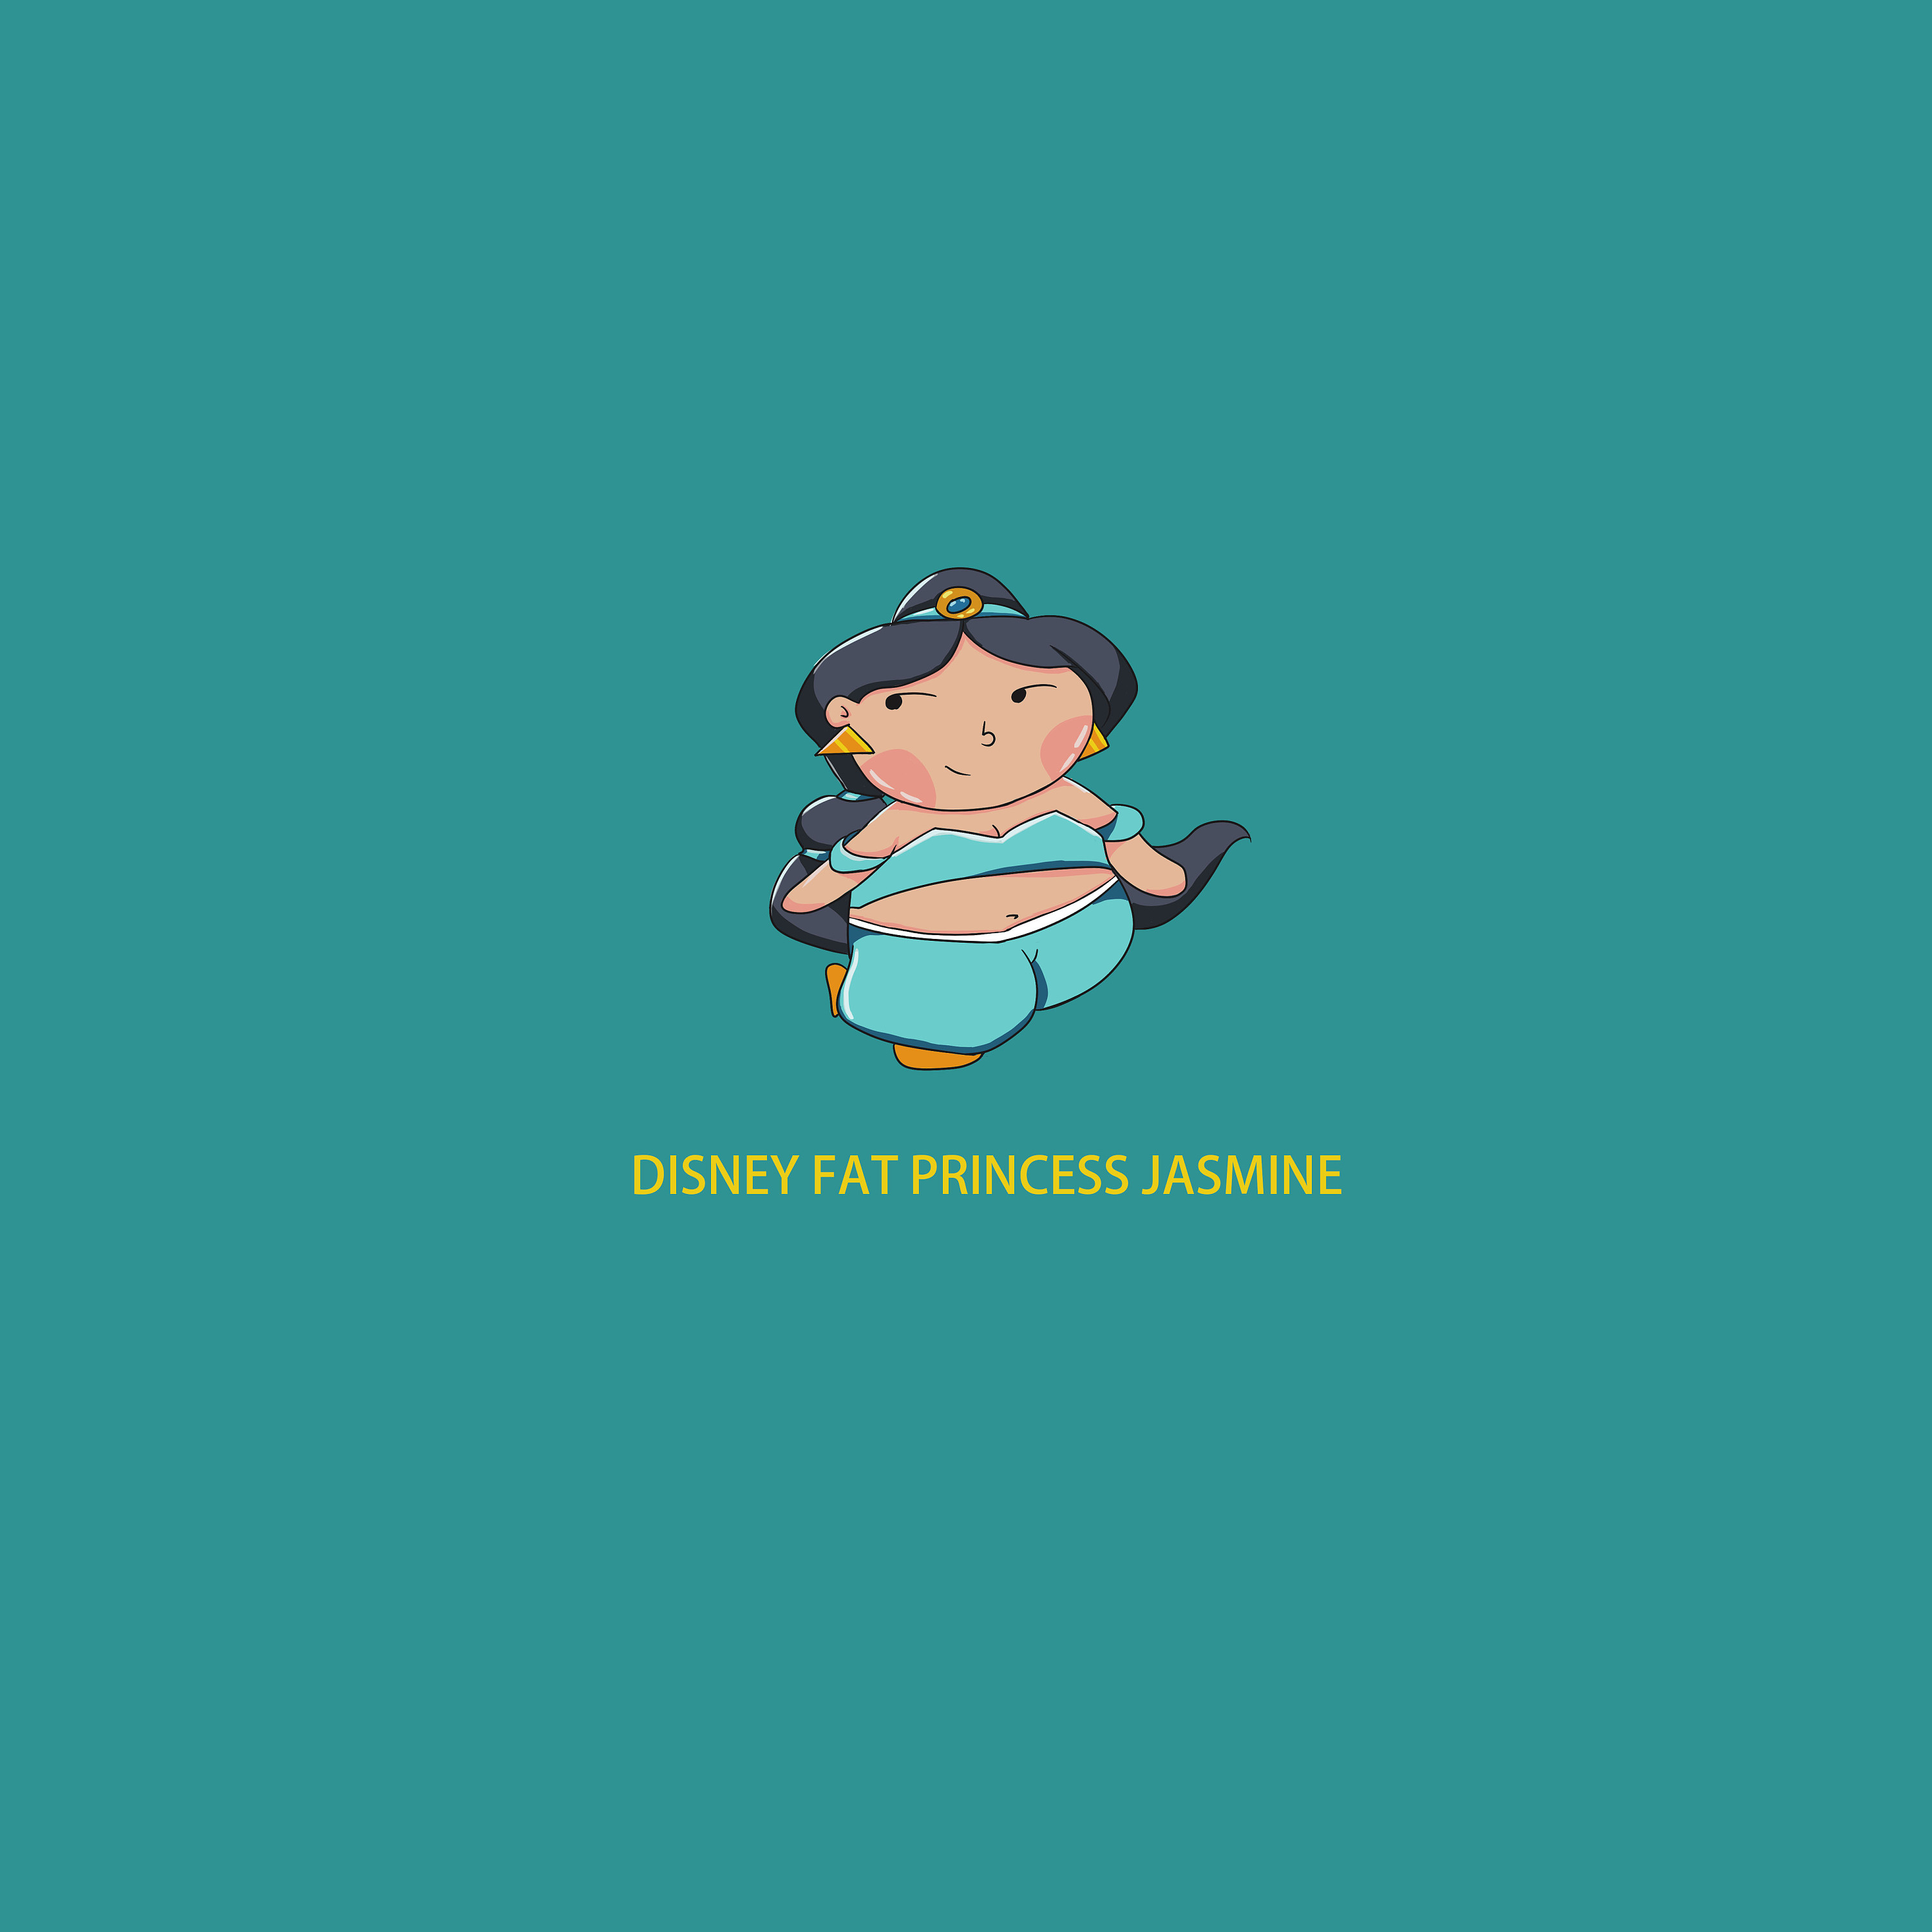 超可爱胖嘟嘟版的迪士尼公主高清动画手机壁纸图片 - 第 3 | 犀牛图片网